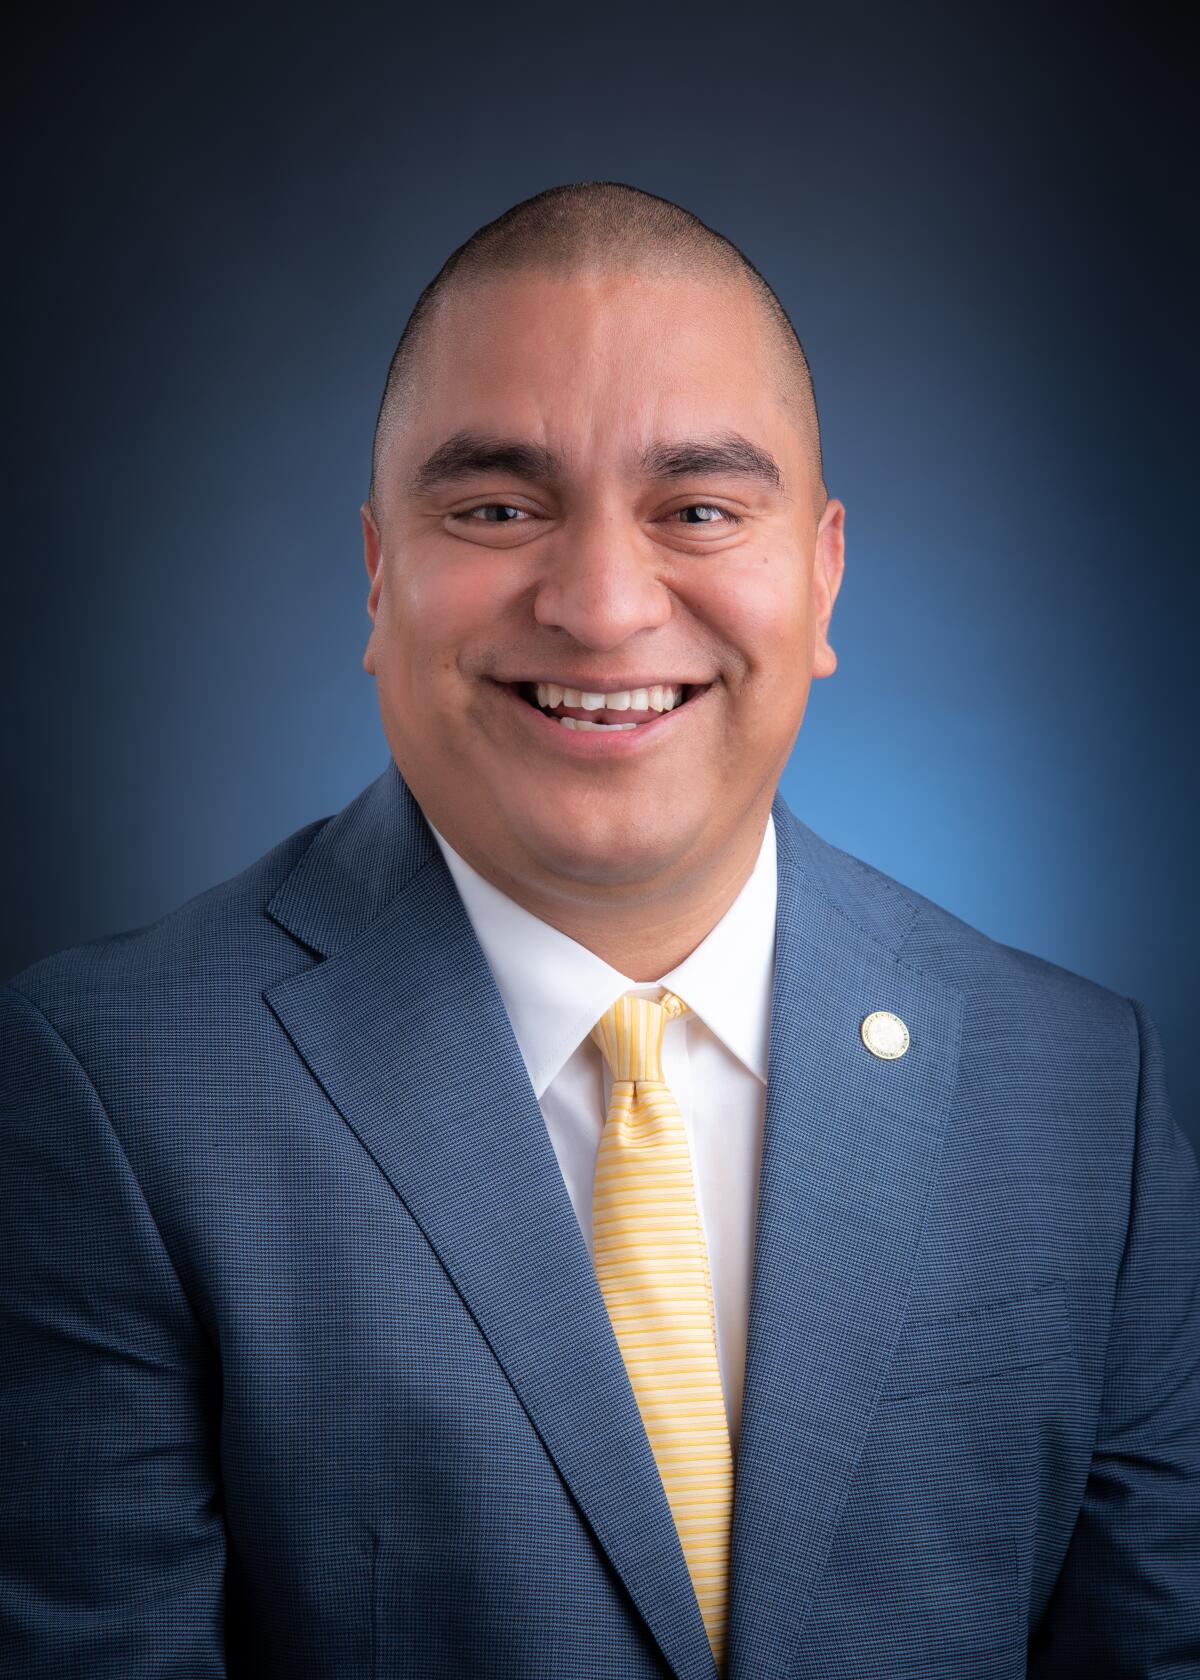 Vista Mayor candidate Cipriano Vargas.